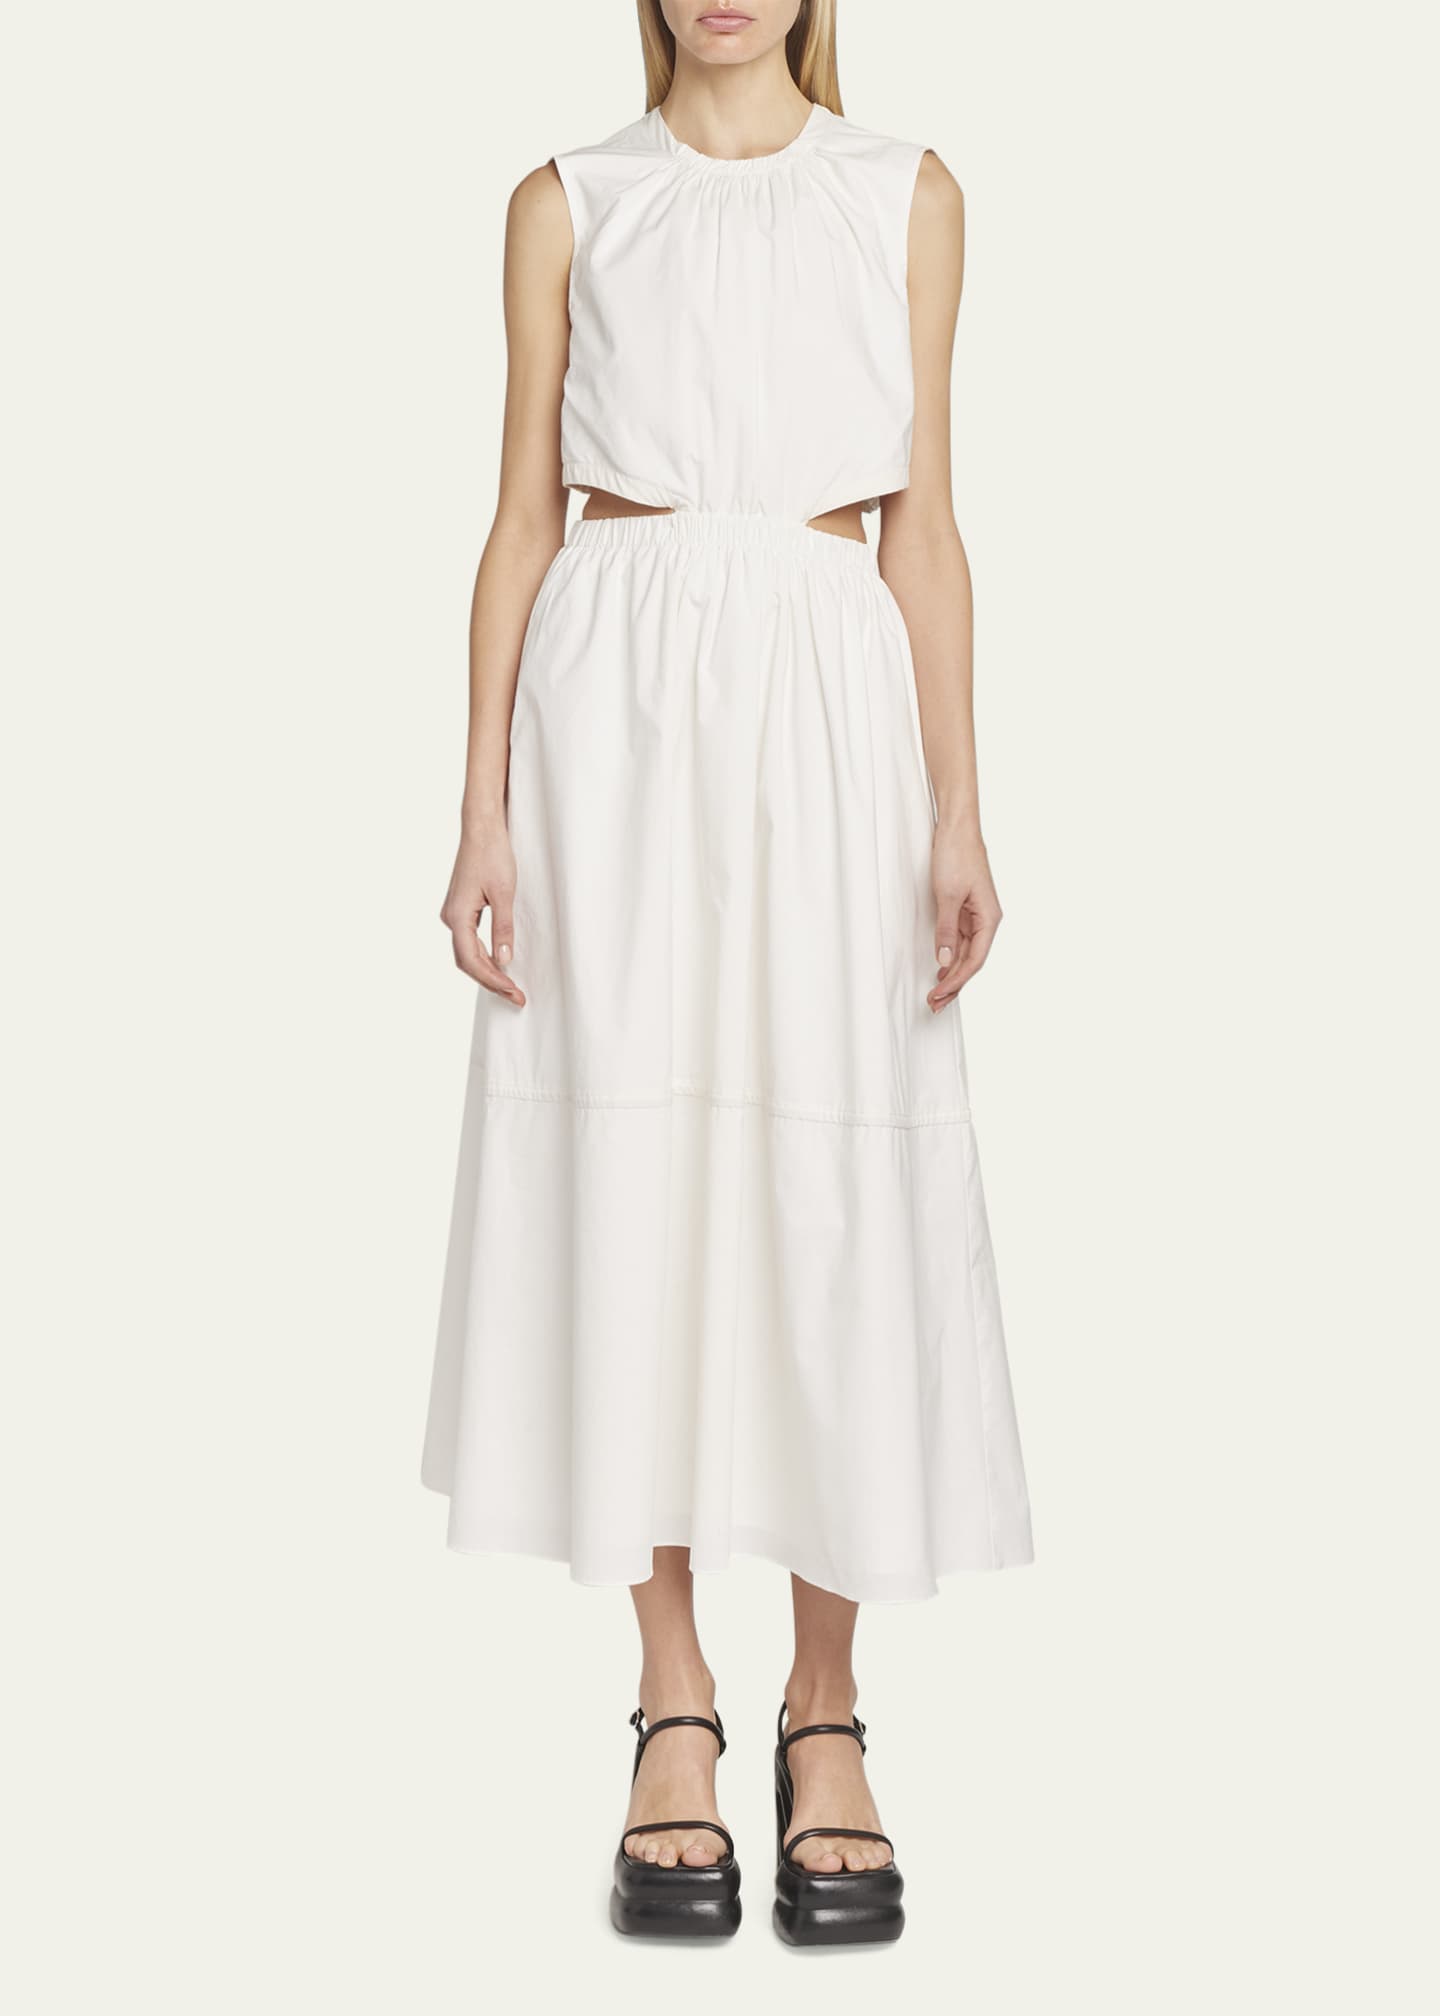 Proenza Schouler White Label Poplin Cut-Out Midi Dress - Bergdorf Goodman